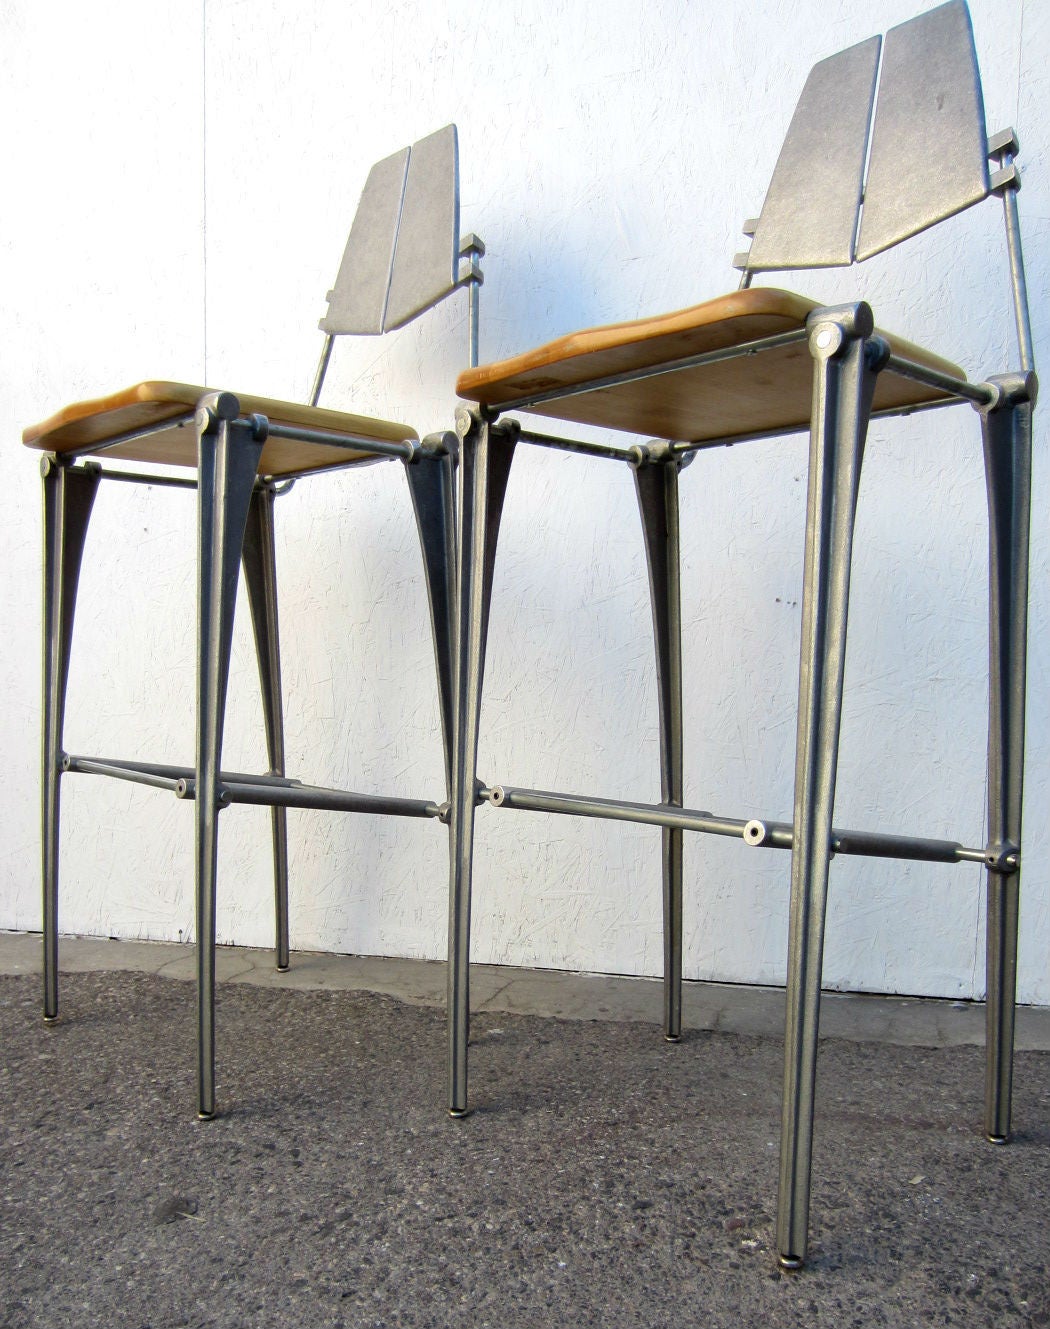 De remarquables tabourets de bar en aluminium conçus par Robert Josten.
Fonte d'aluminium avec sièges en bois de hêtre.
L'industriel rencontre le modernisme, vers les années 1980.